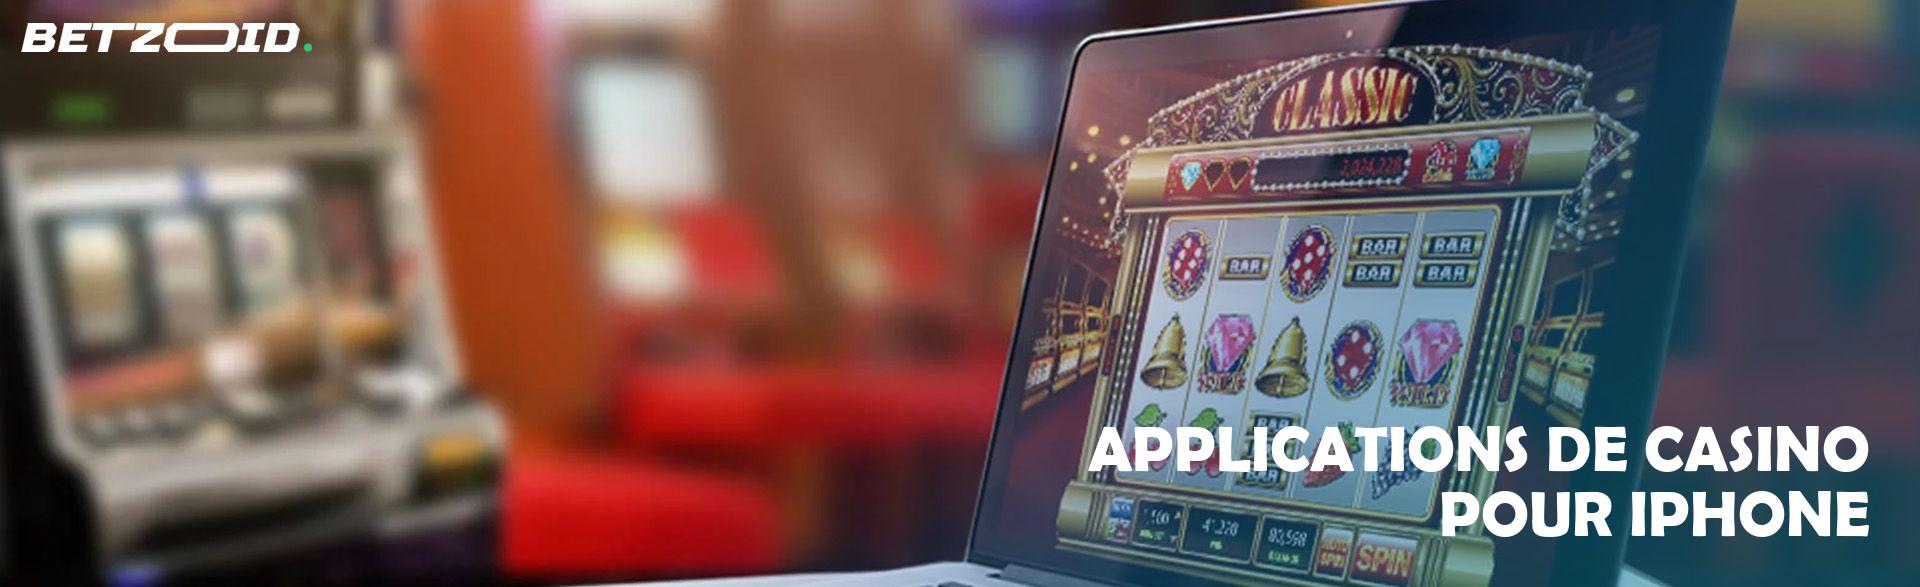 Applications de Casino pour iPhone.